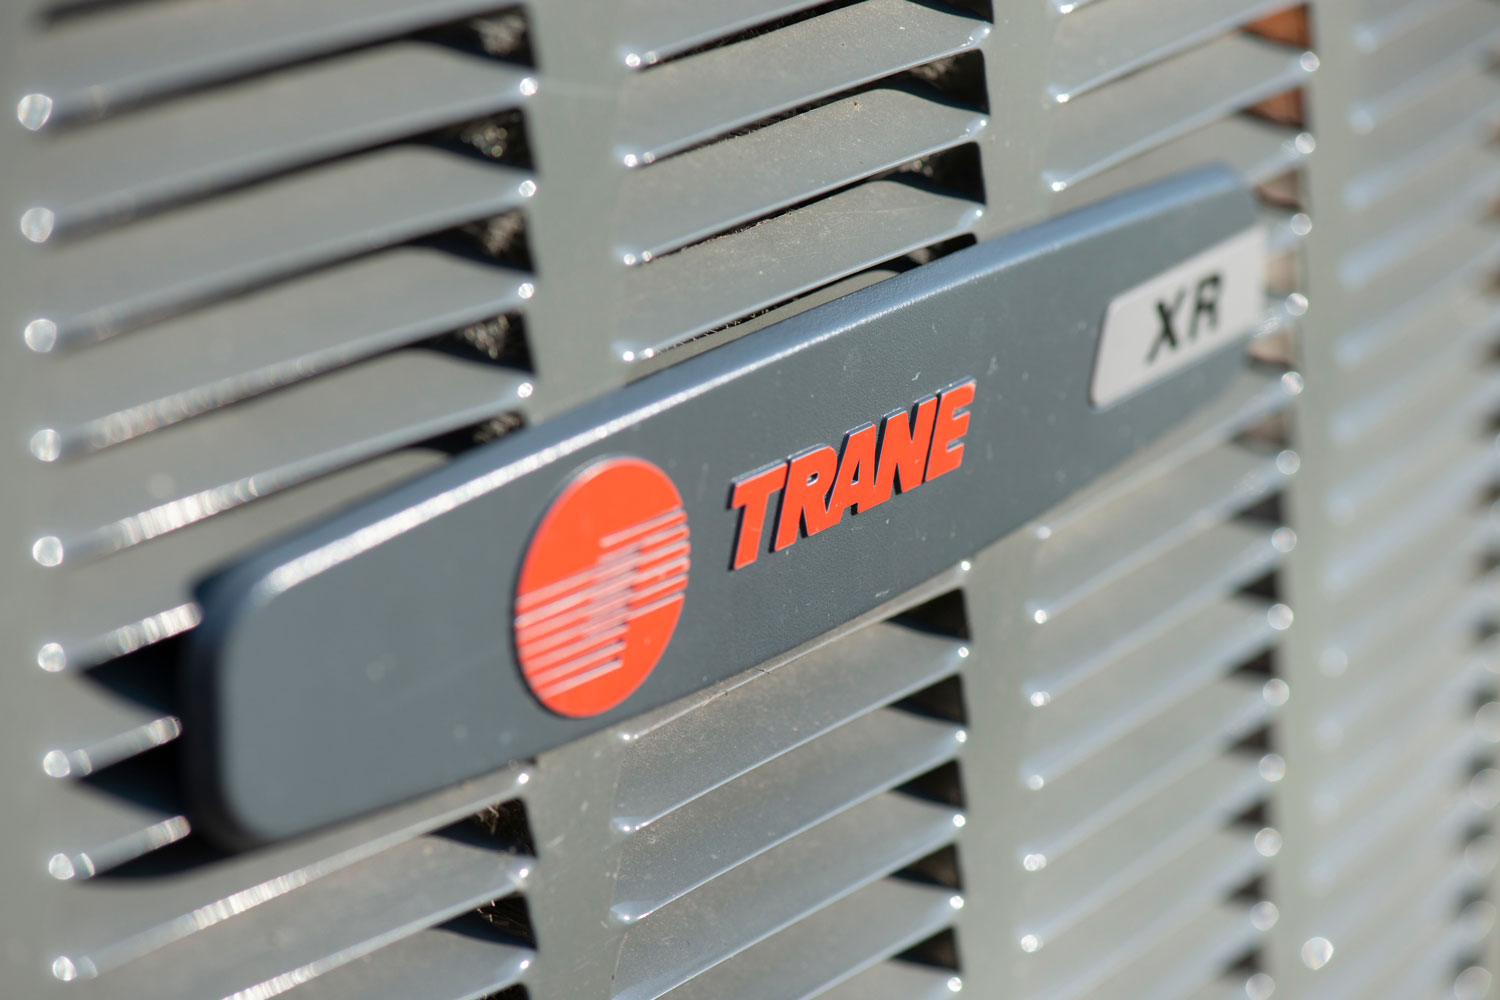 Trane air conditioner unit